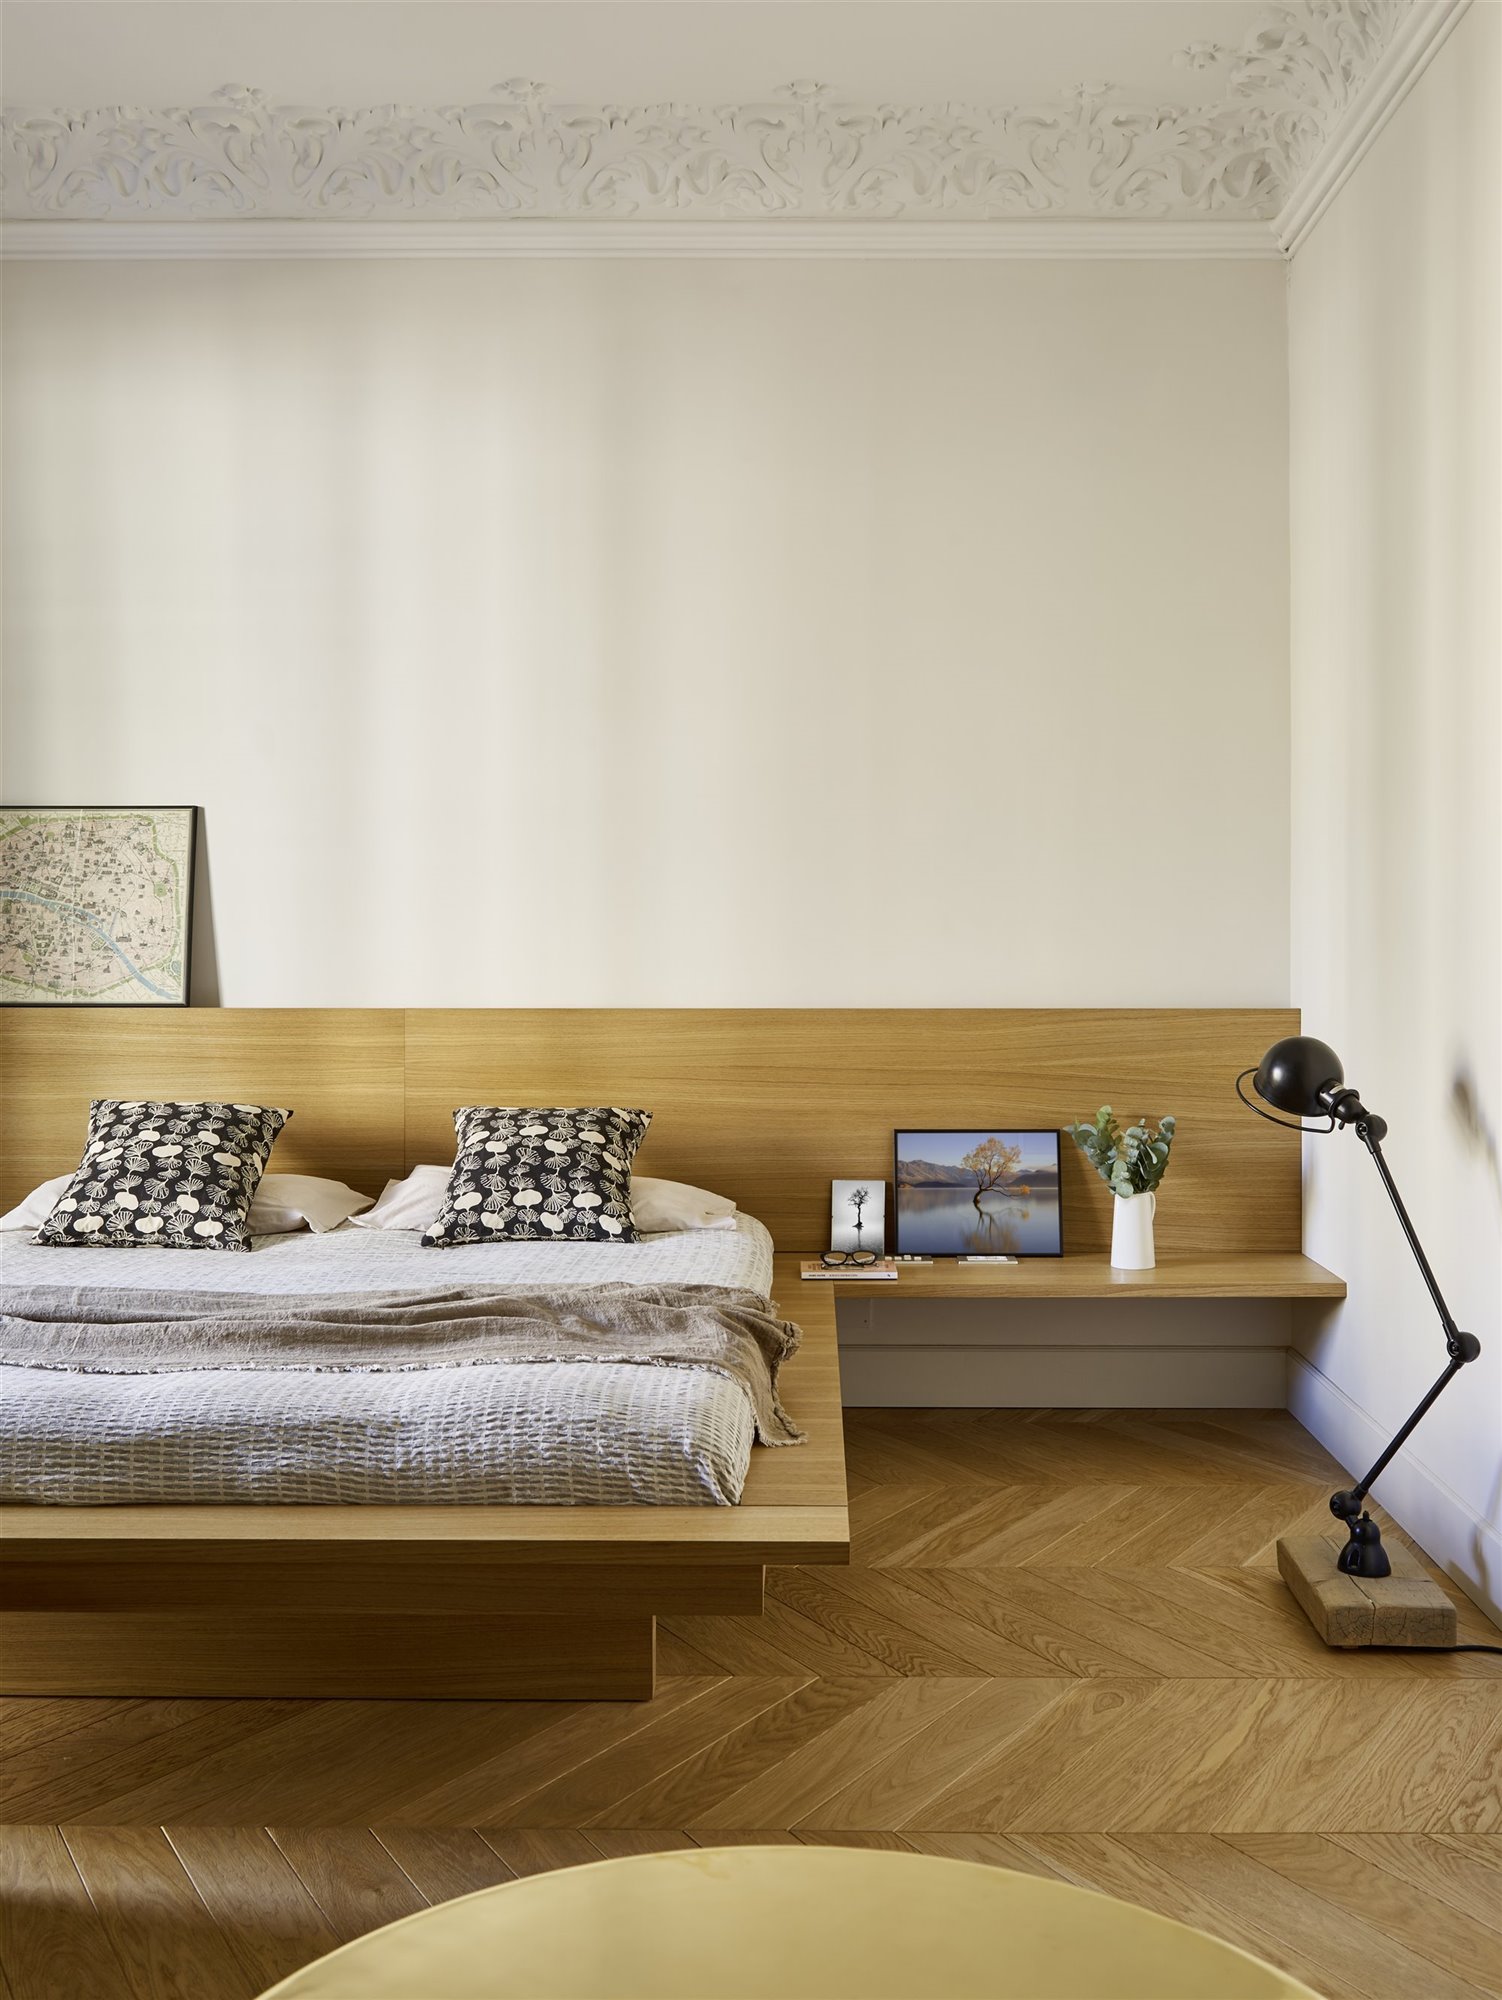 Muebles para Dormitorio: Descans0 y Estilo en tu Santuario Personal-2023